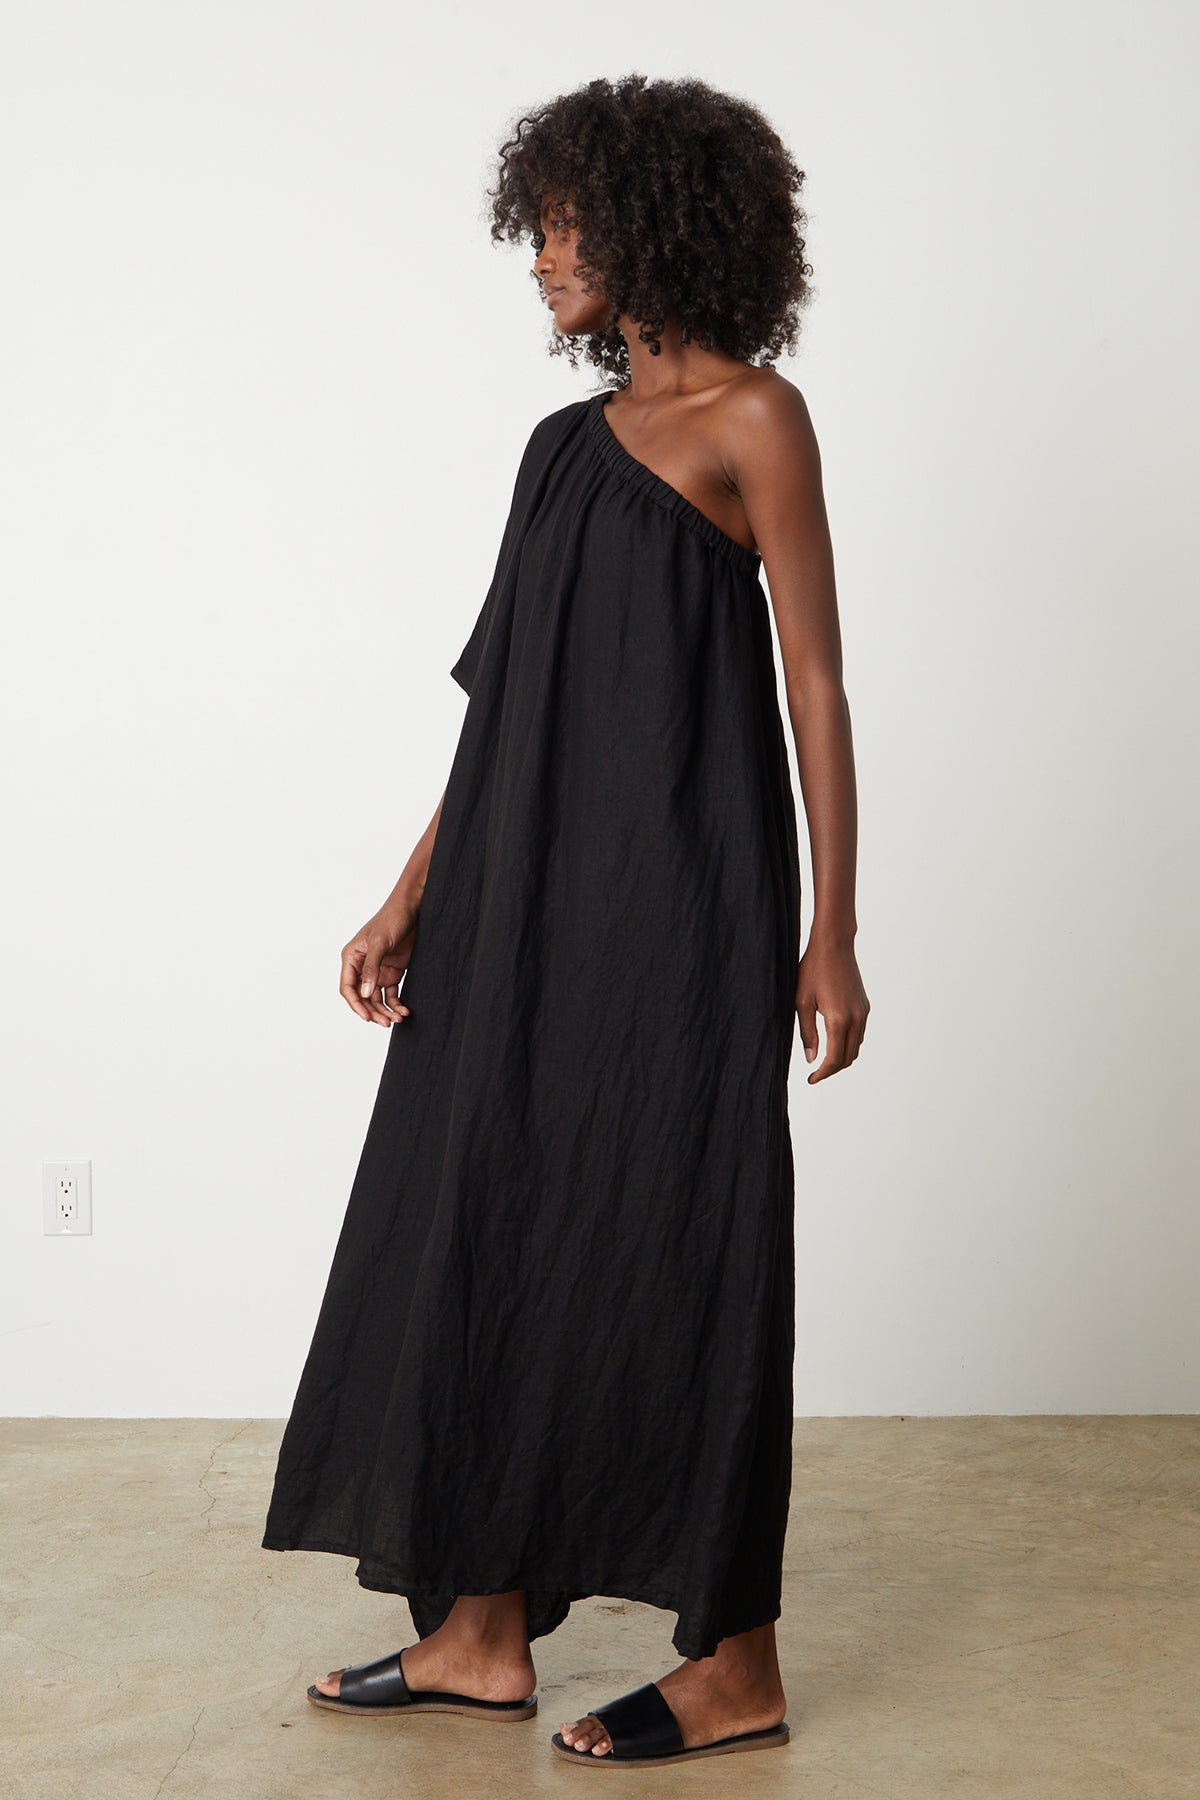   Andrea Linen Dress in black with black slides full length side 